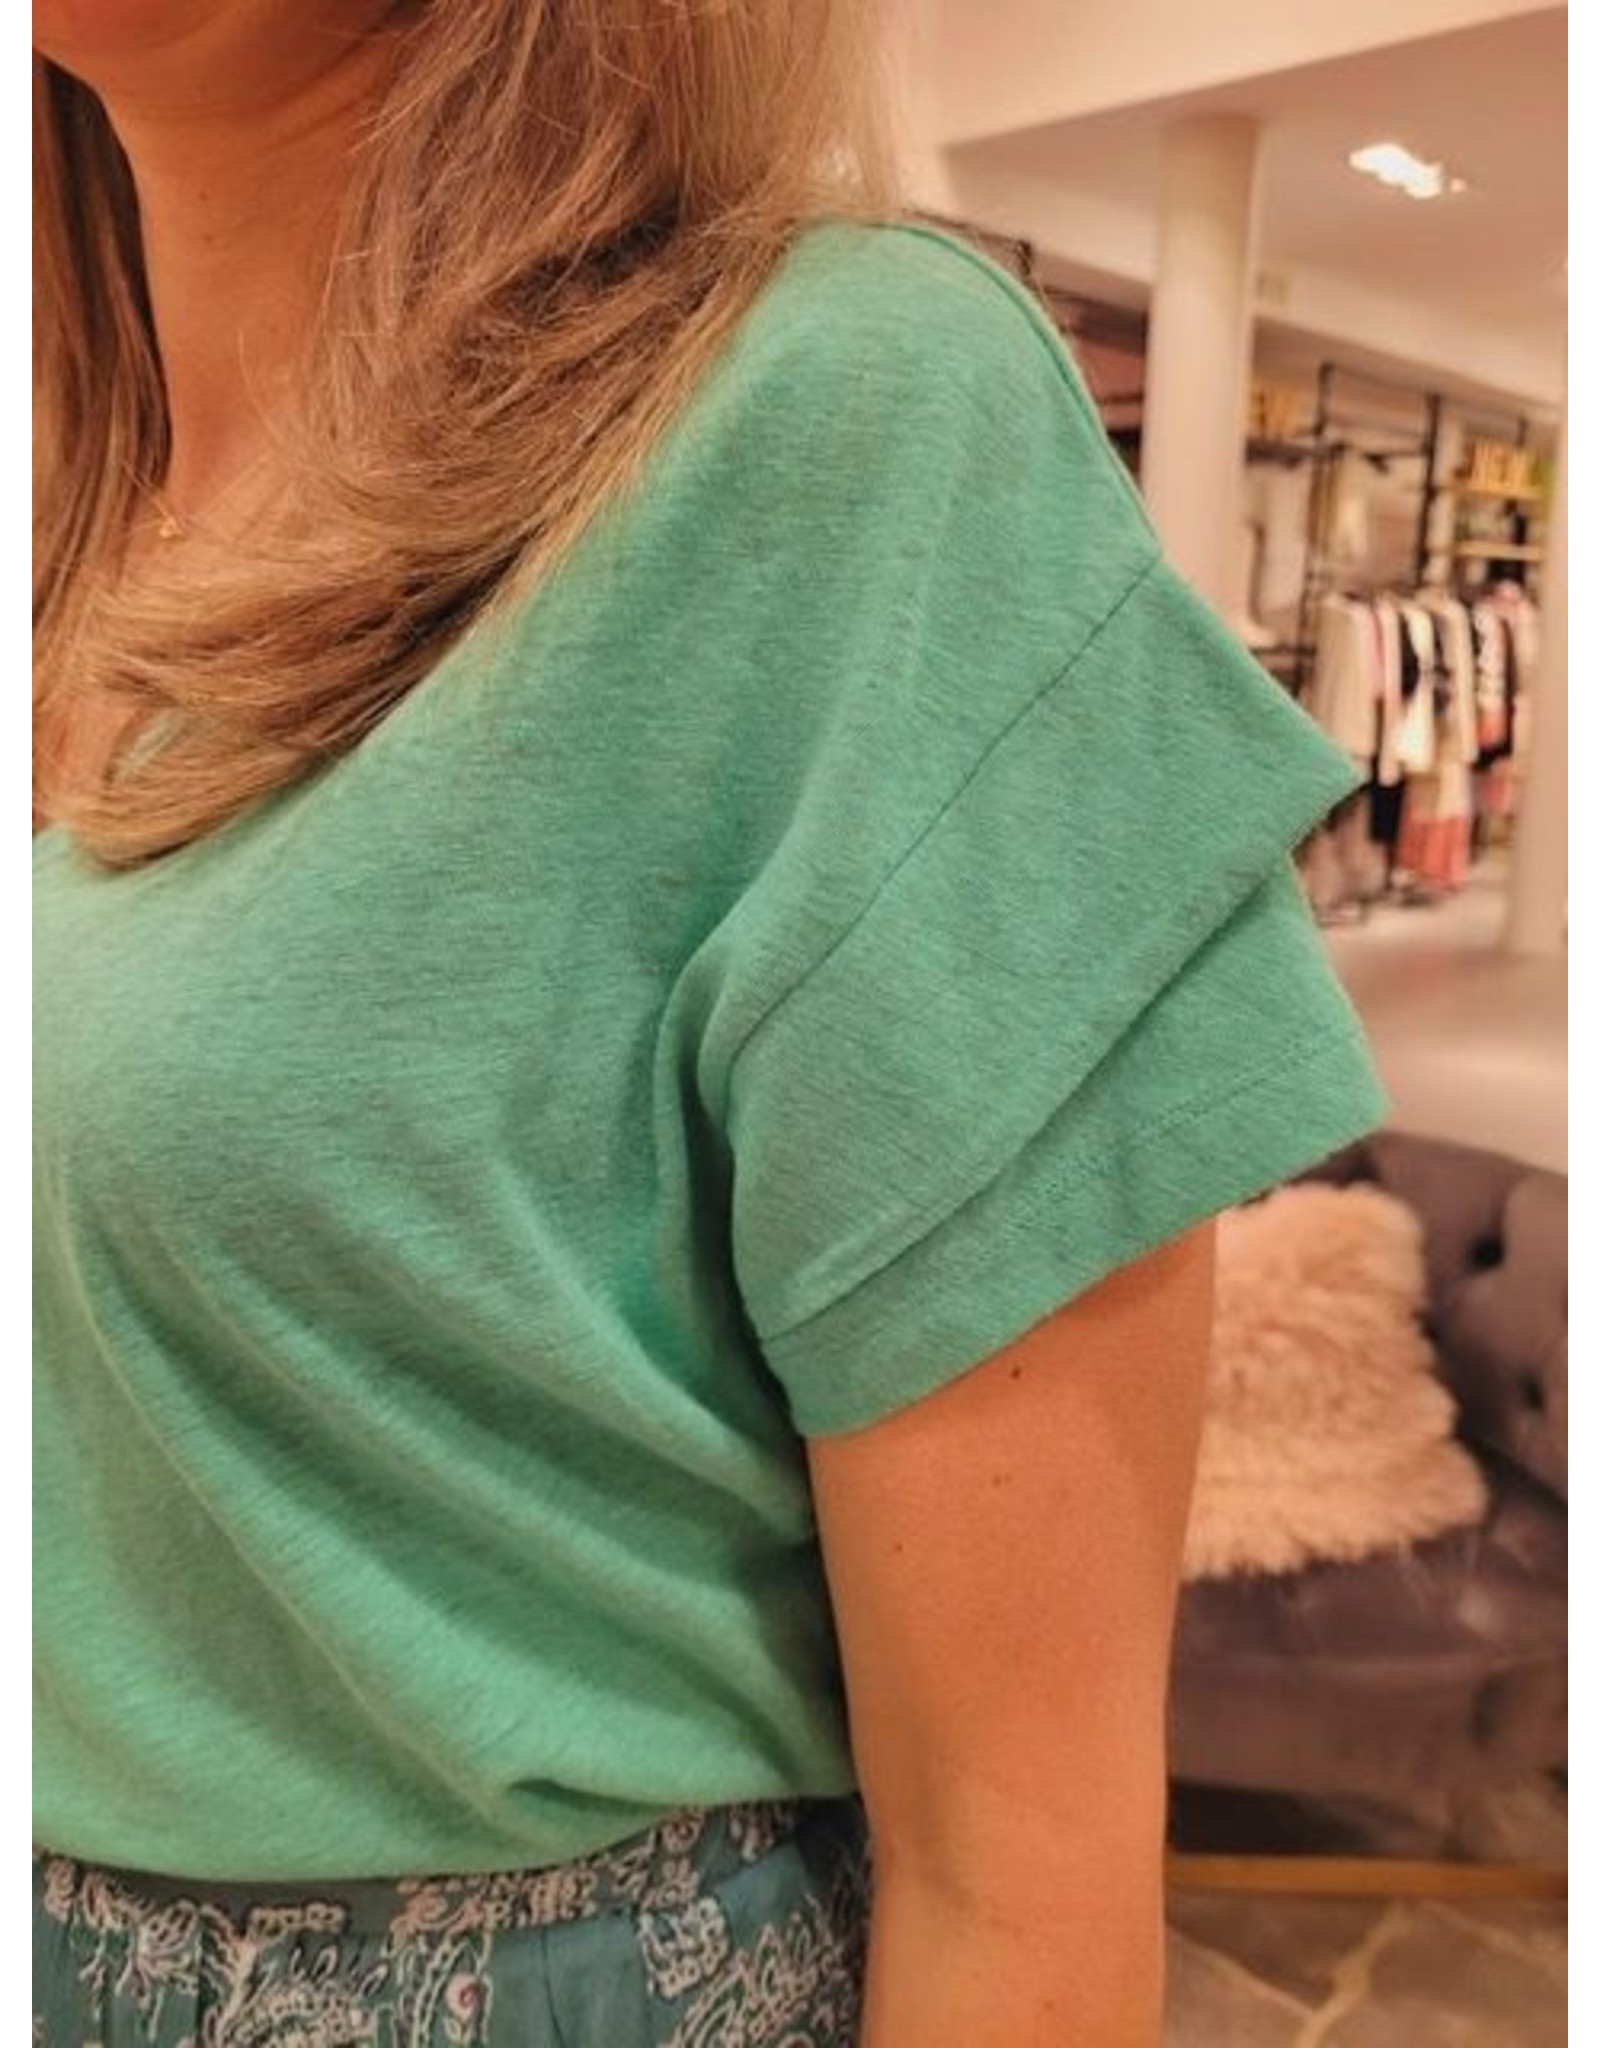 Suncoo T-shirt Matei - Vert D'Eau